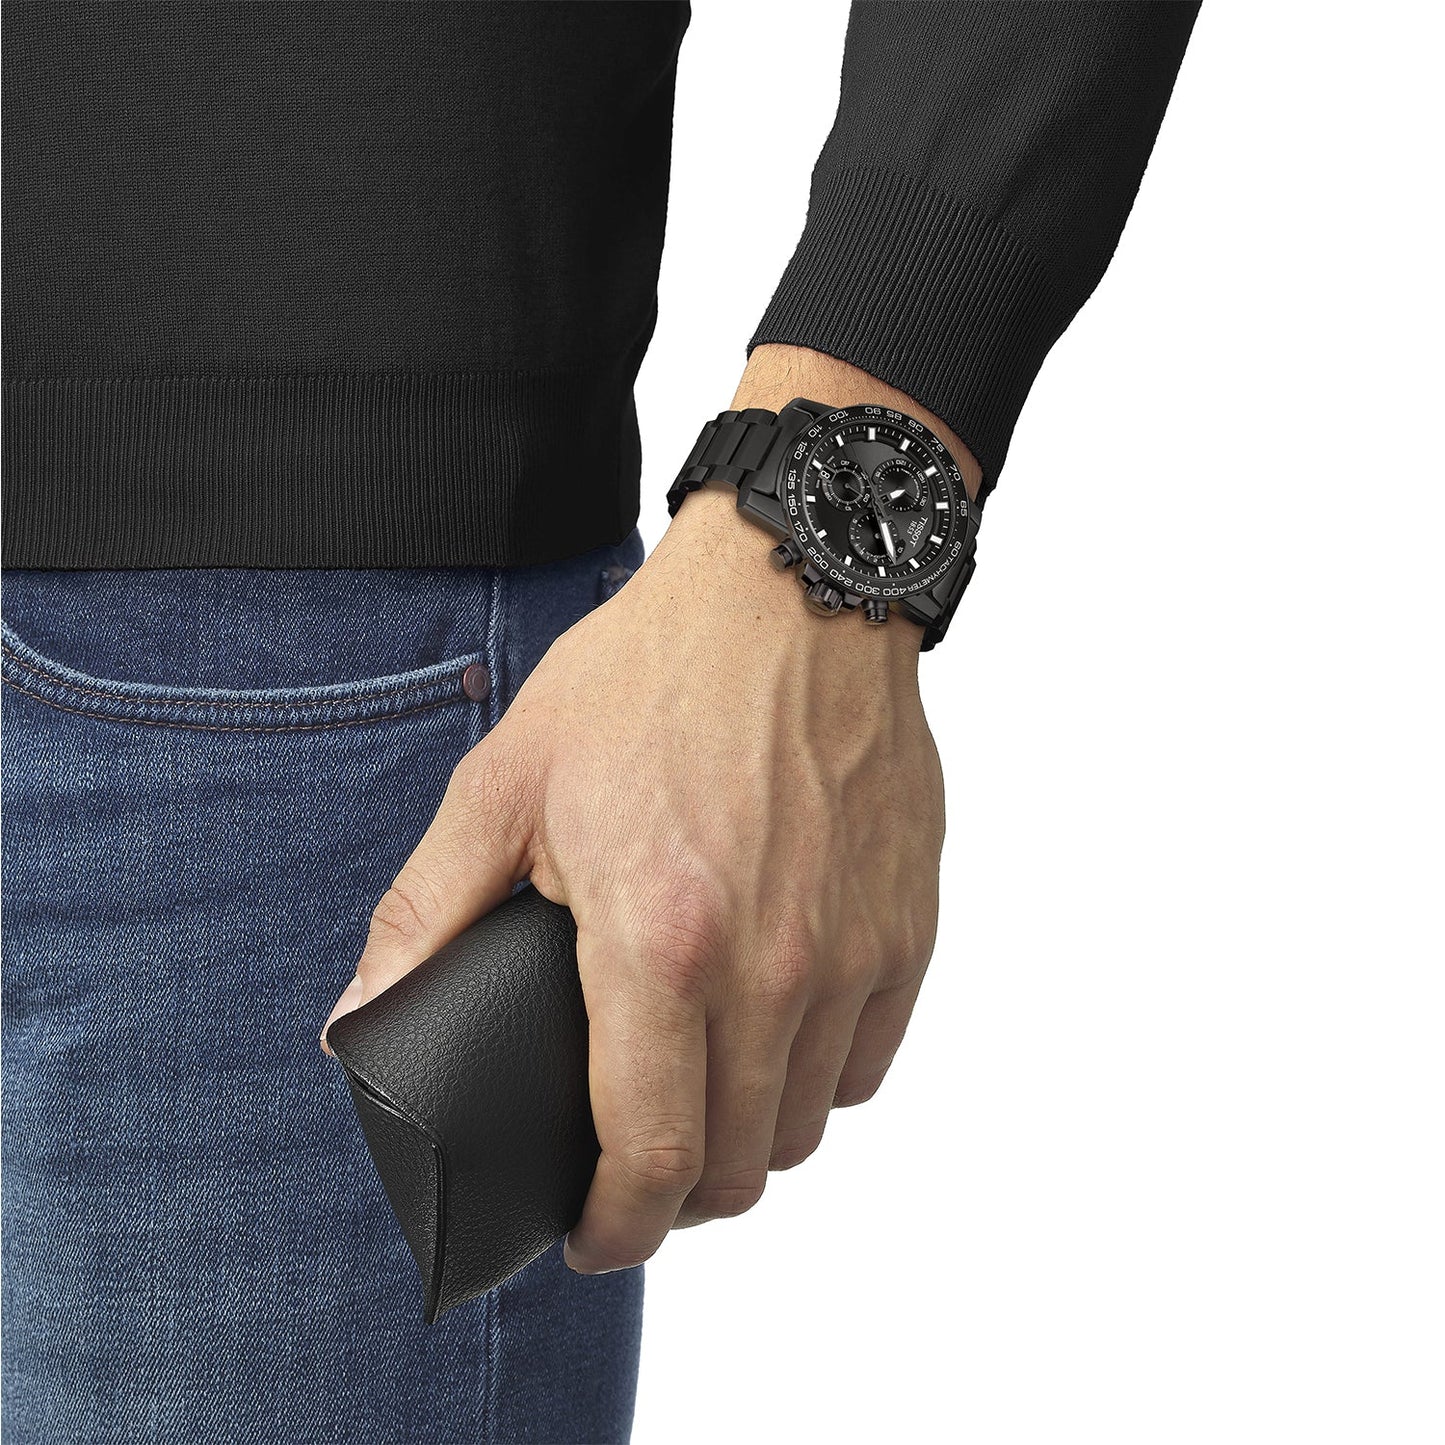 Tissot  T1256173305100 Supersport Chrono  Black Dial  Black PVD Steel Bracelet Men's Watch - mzwatcheslk srilanka